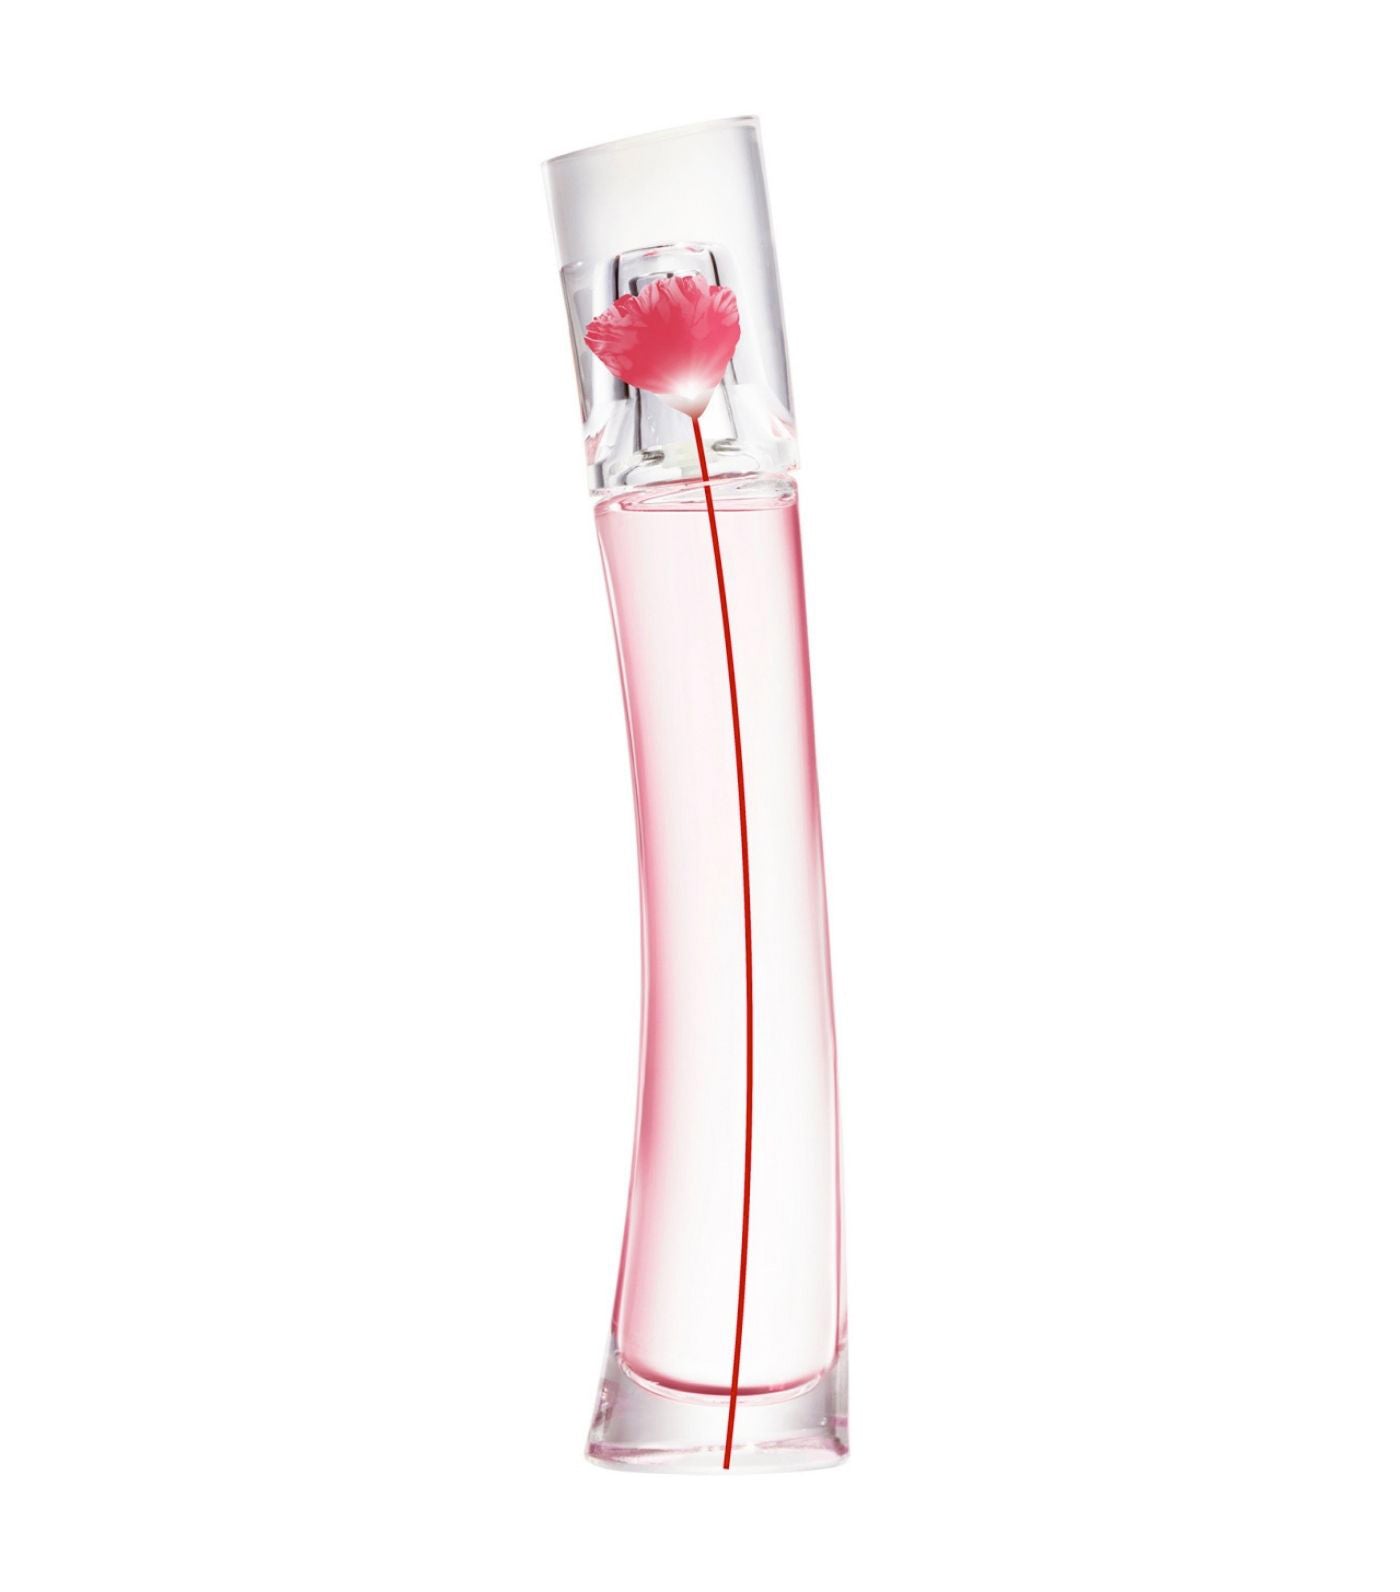 Poppy KENZO KENZO FLOWER Parfums BY Bouquet Toilette de Eau